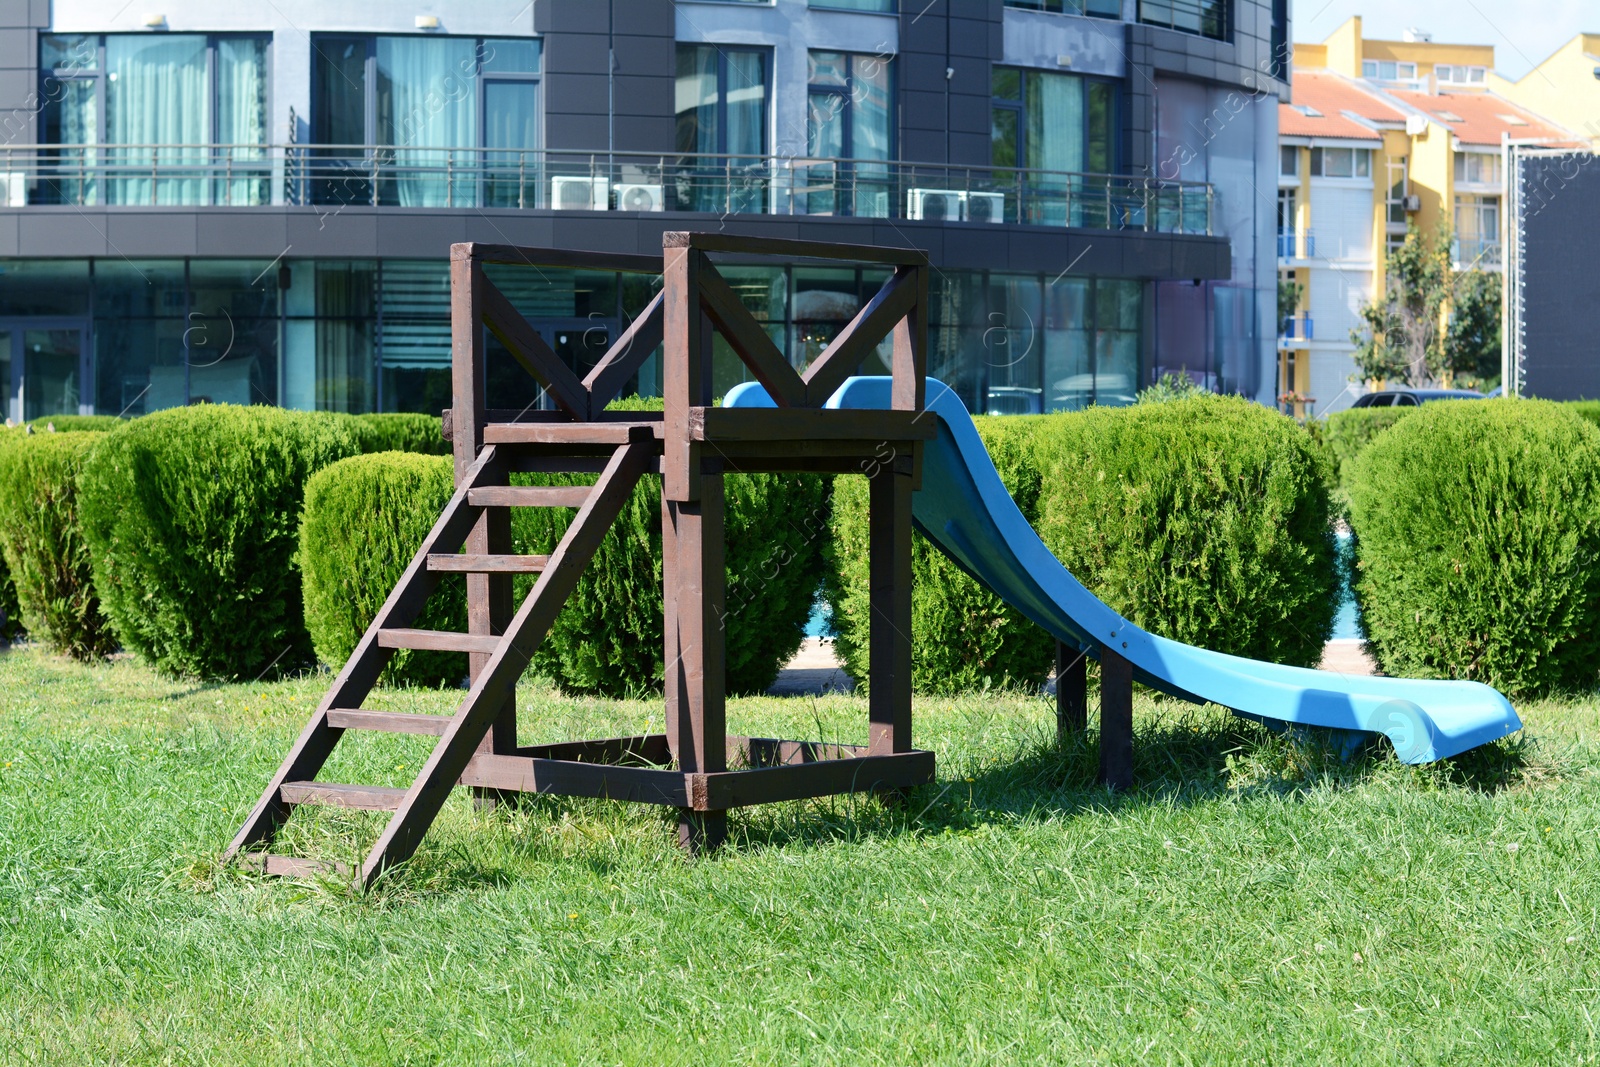 Photo of Children's slide on green grass in park